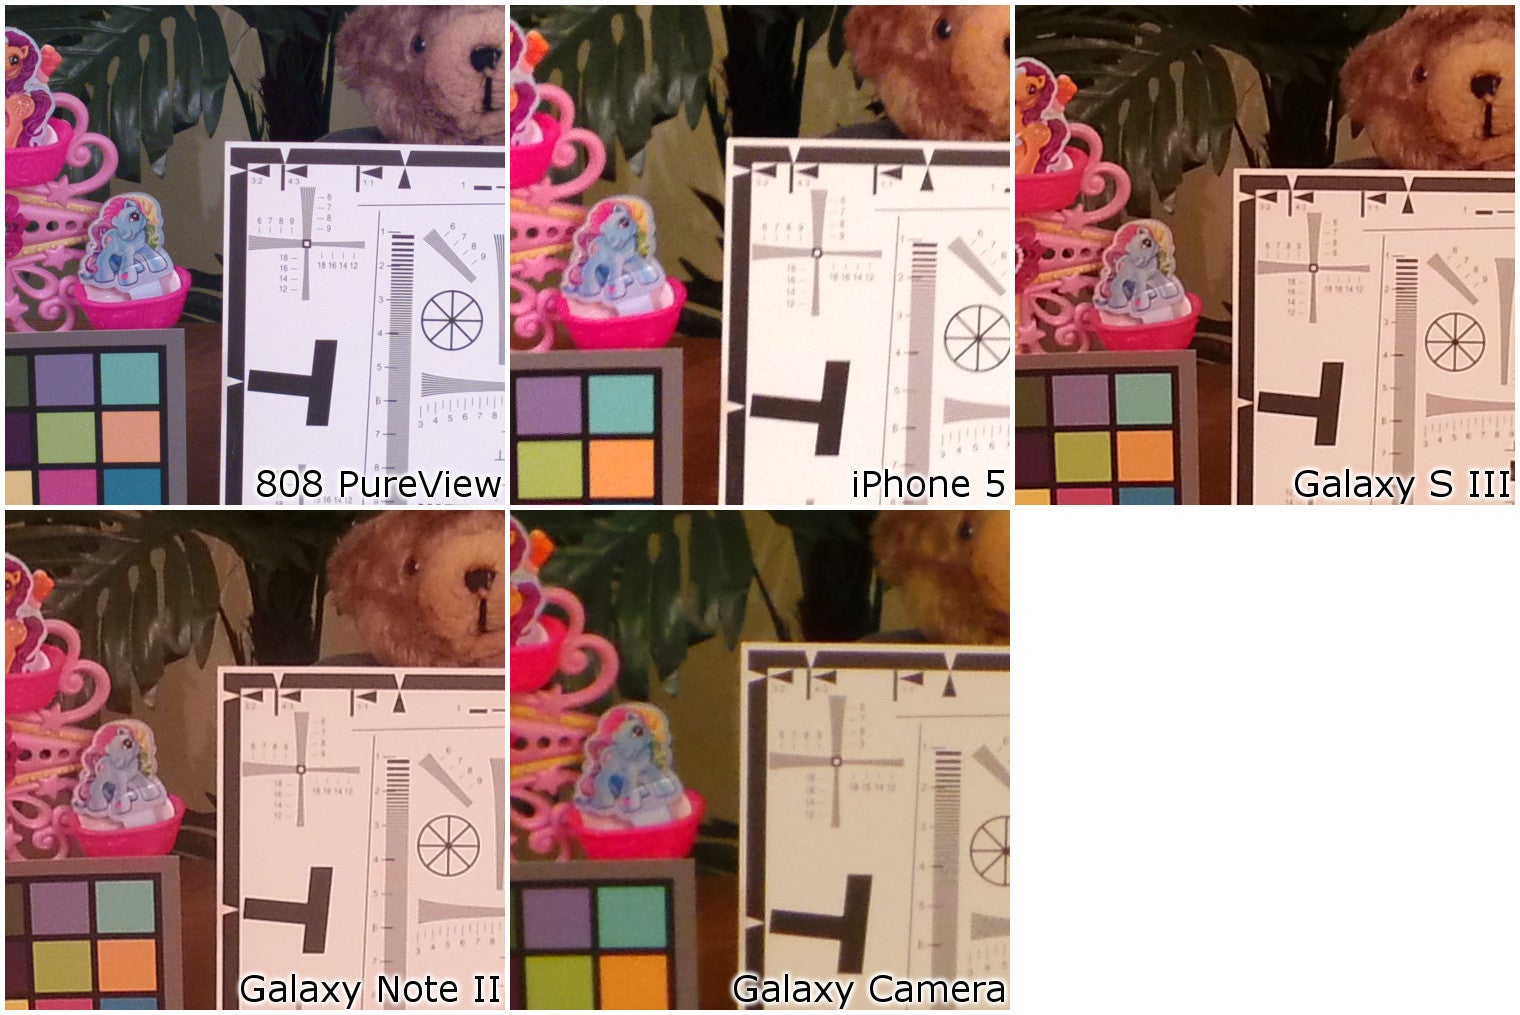 100% Crops - Camera Comparison: Samsung Galaxy Camera vs Galaxy S III, Galaxy Note II, iPhone 5, Nokia 808 PureView